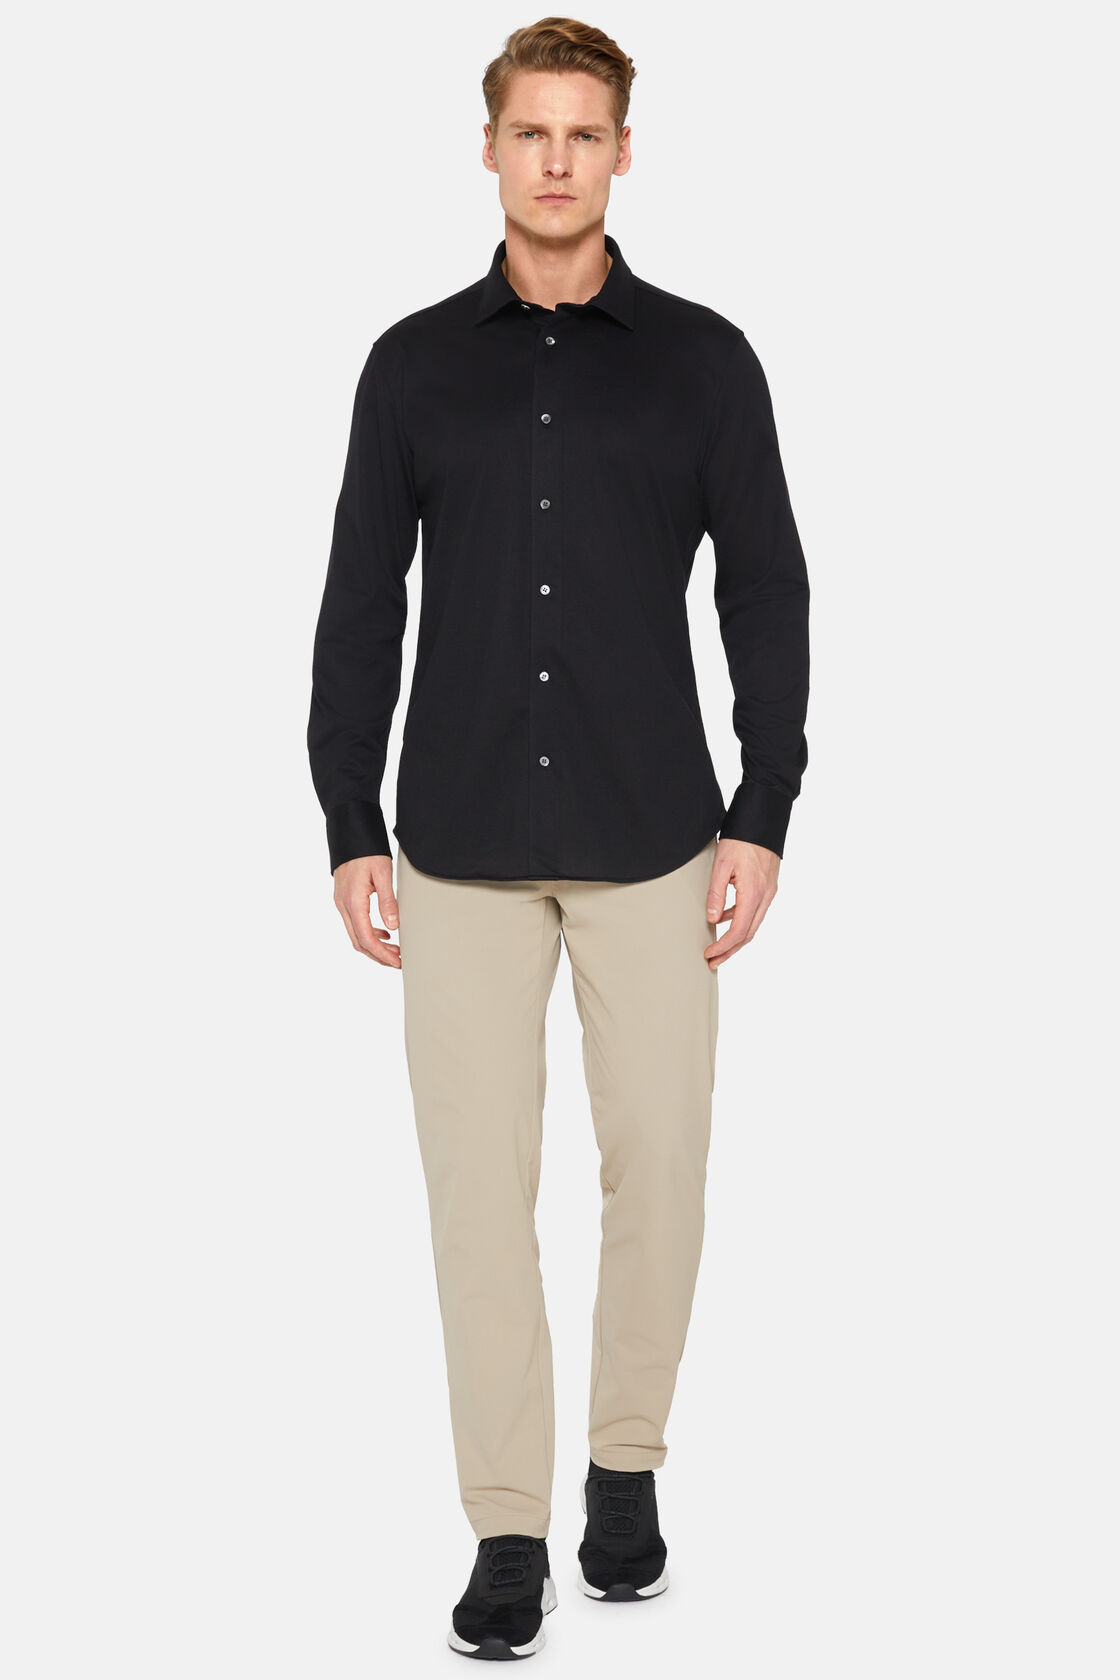 Μαύριο πουκάμισο σε στενή γραμμή από βαμβάκι και COOLMAX®, Black, hi-res